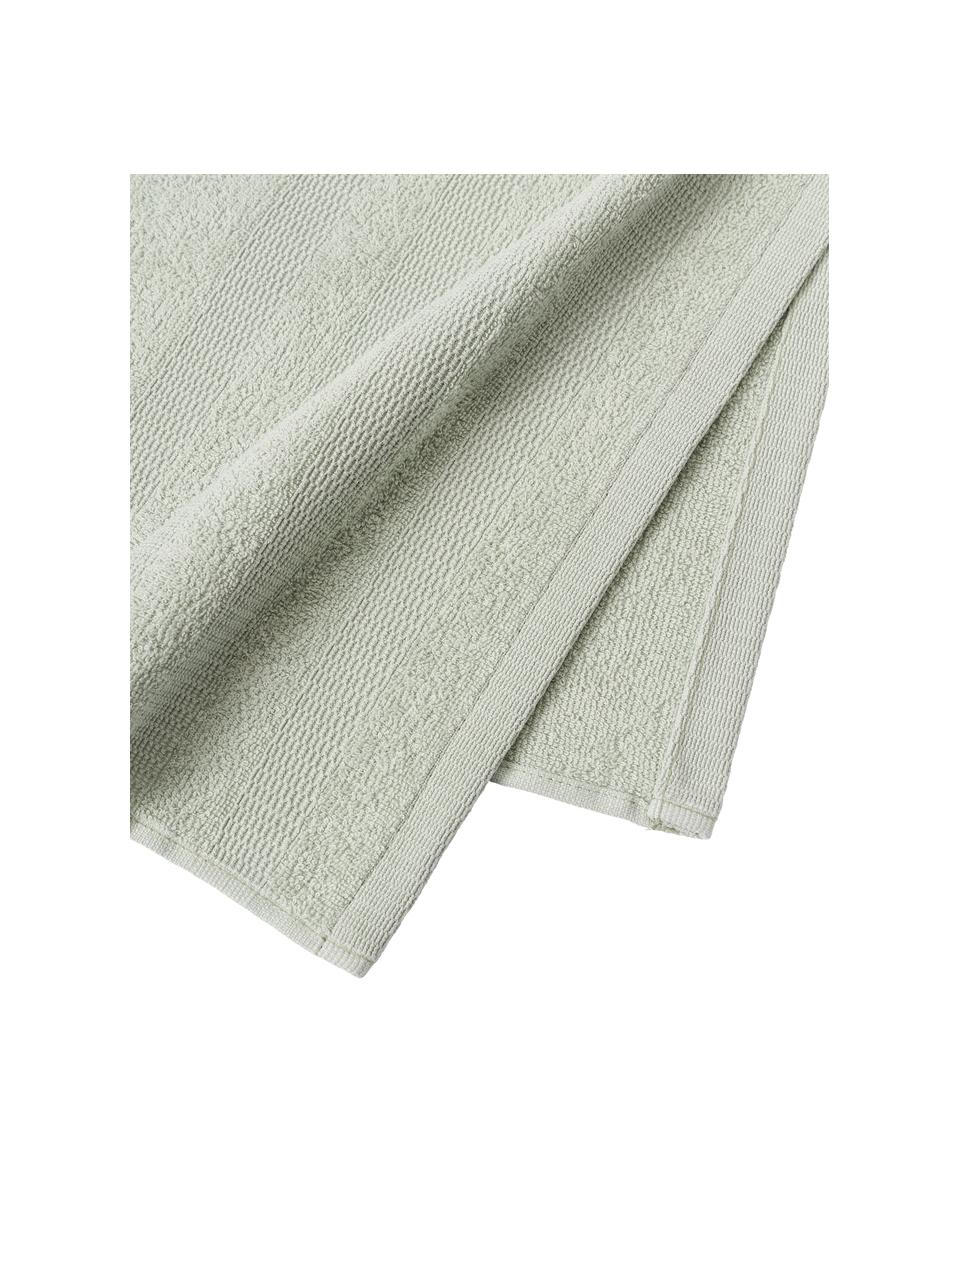 Ręczniki dla gości z bawełny Camila, 4 szt., Szałwiowy zielony, S 30 x D 50 cm